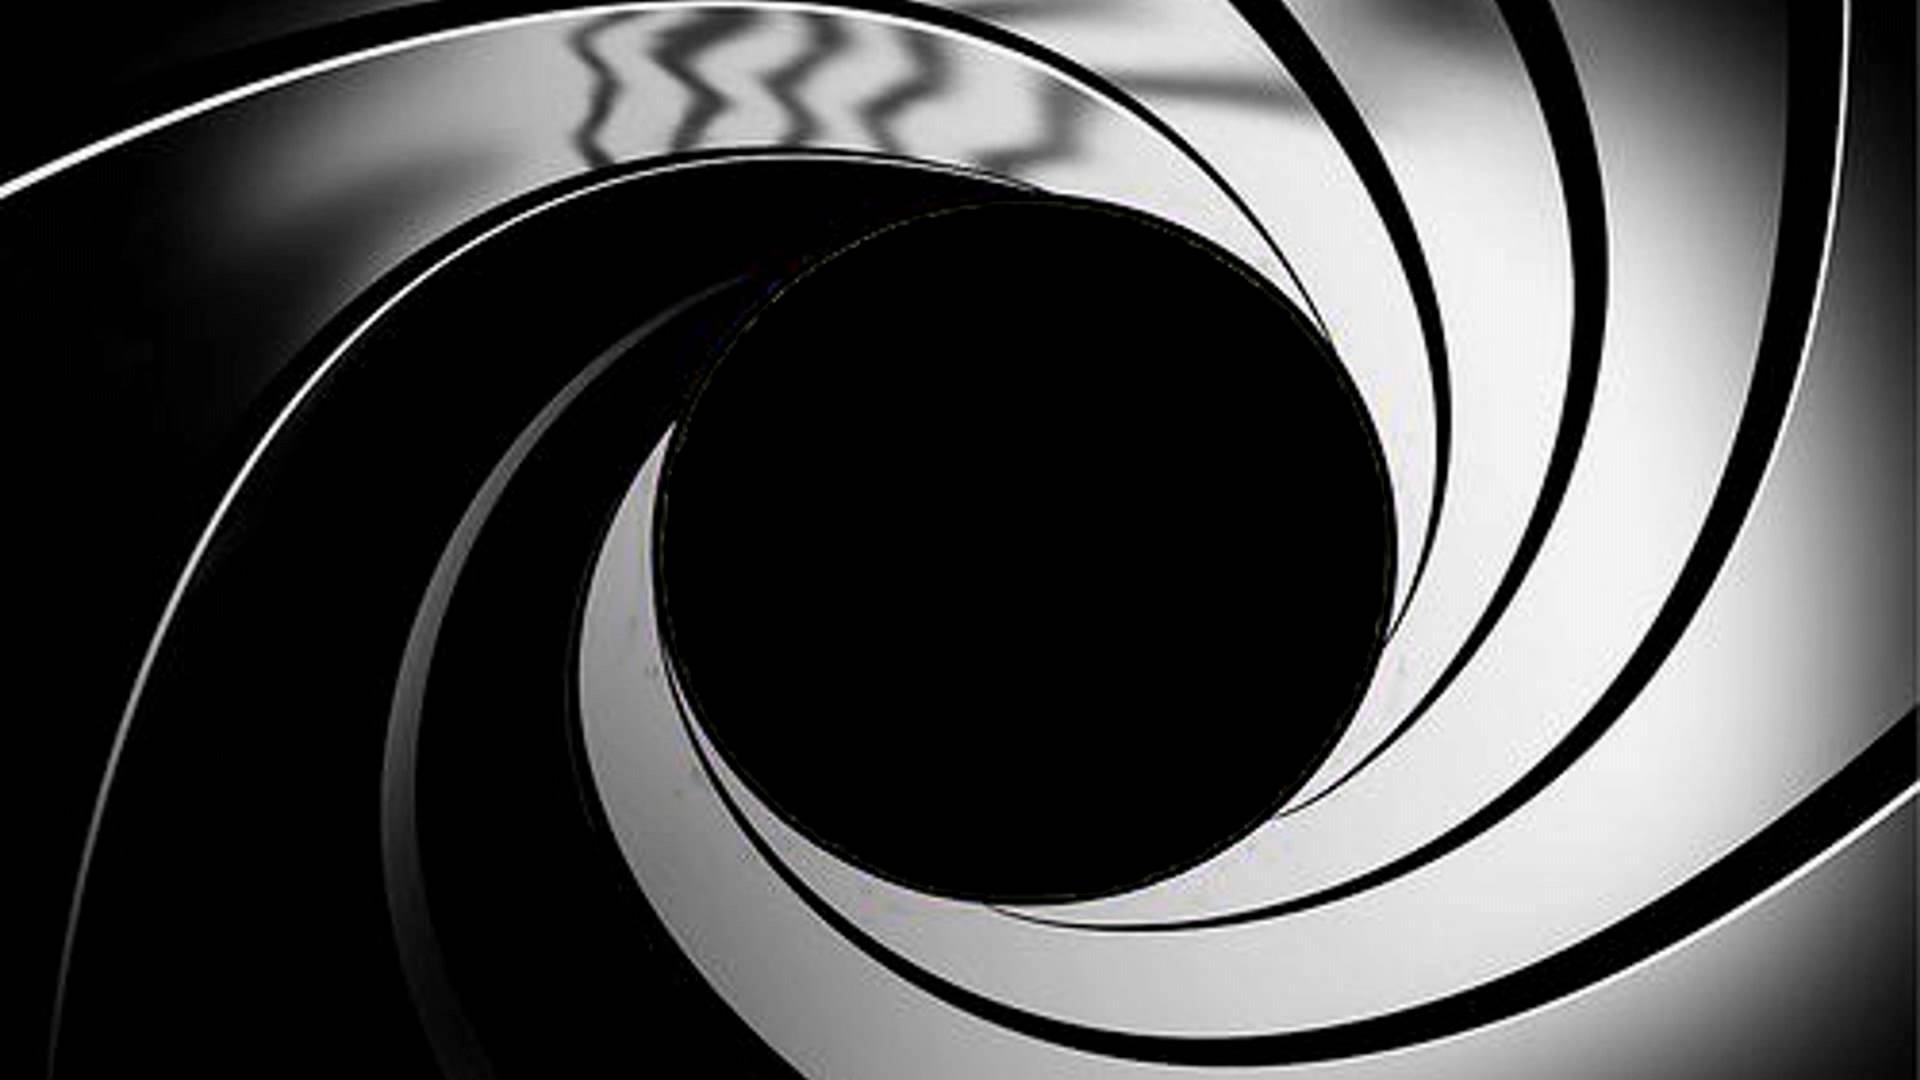 007 Backgrounds - Hình nền với chủ đề hoạt động điệp viên 007 sẽ tạo cho bạn cảm giác hứng khởi ngay từ những giây đầu tiên mở hình ảnh lên.